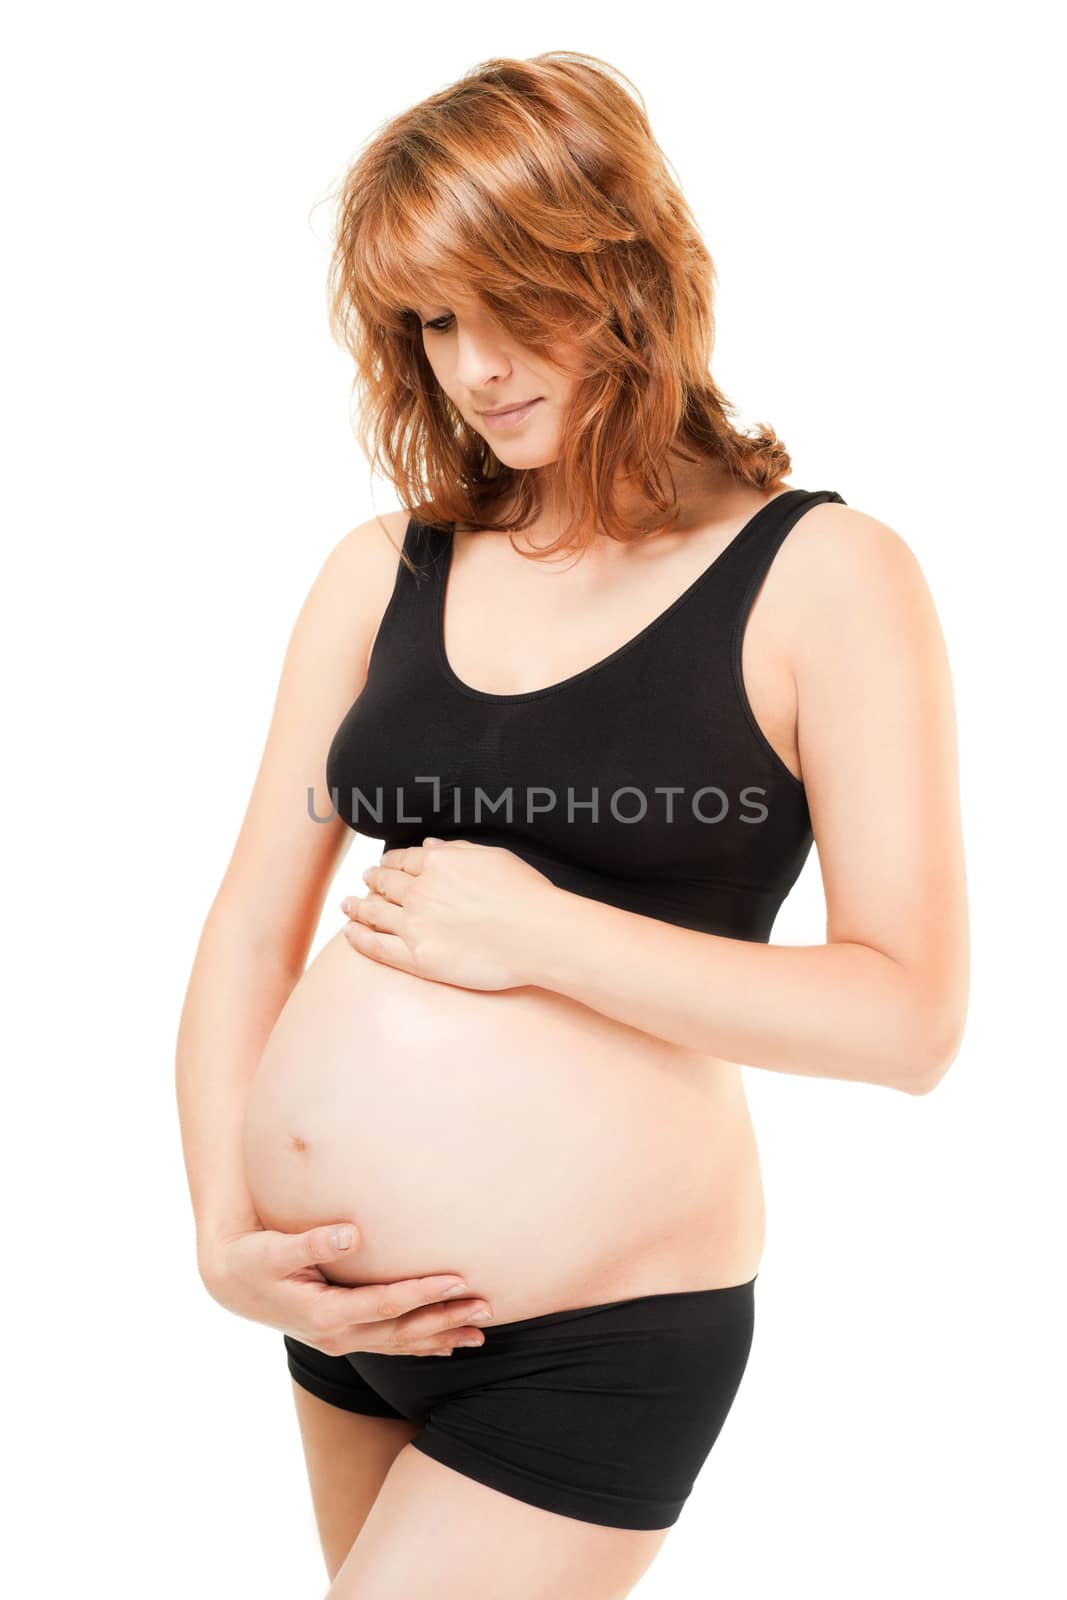 Pregnant woman by vilevi